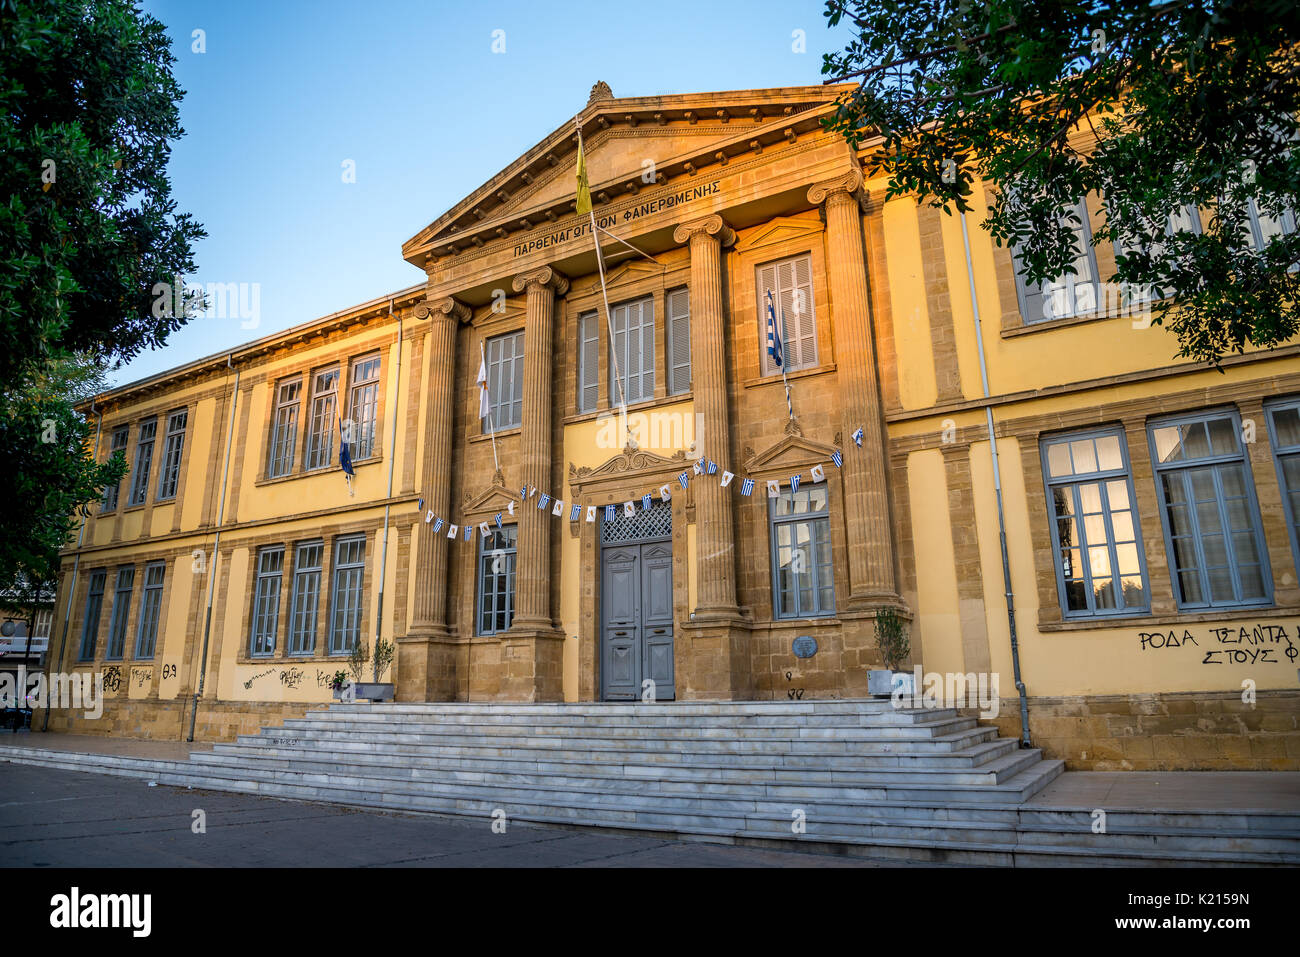 A facade of Faneromeni school in historical Nicosia city centre, Cyprus Stock Photo